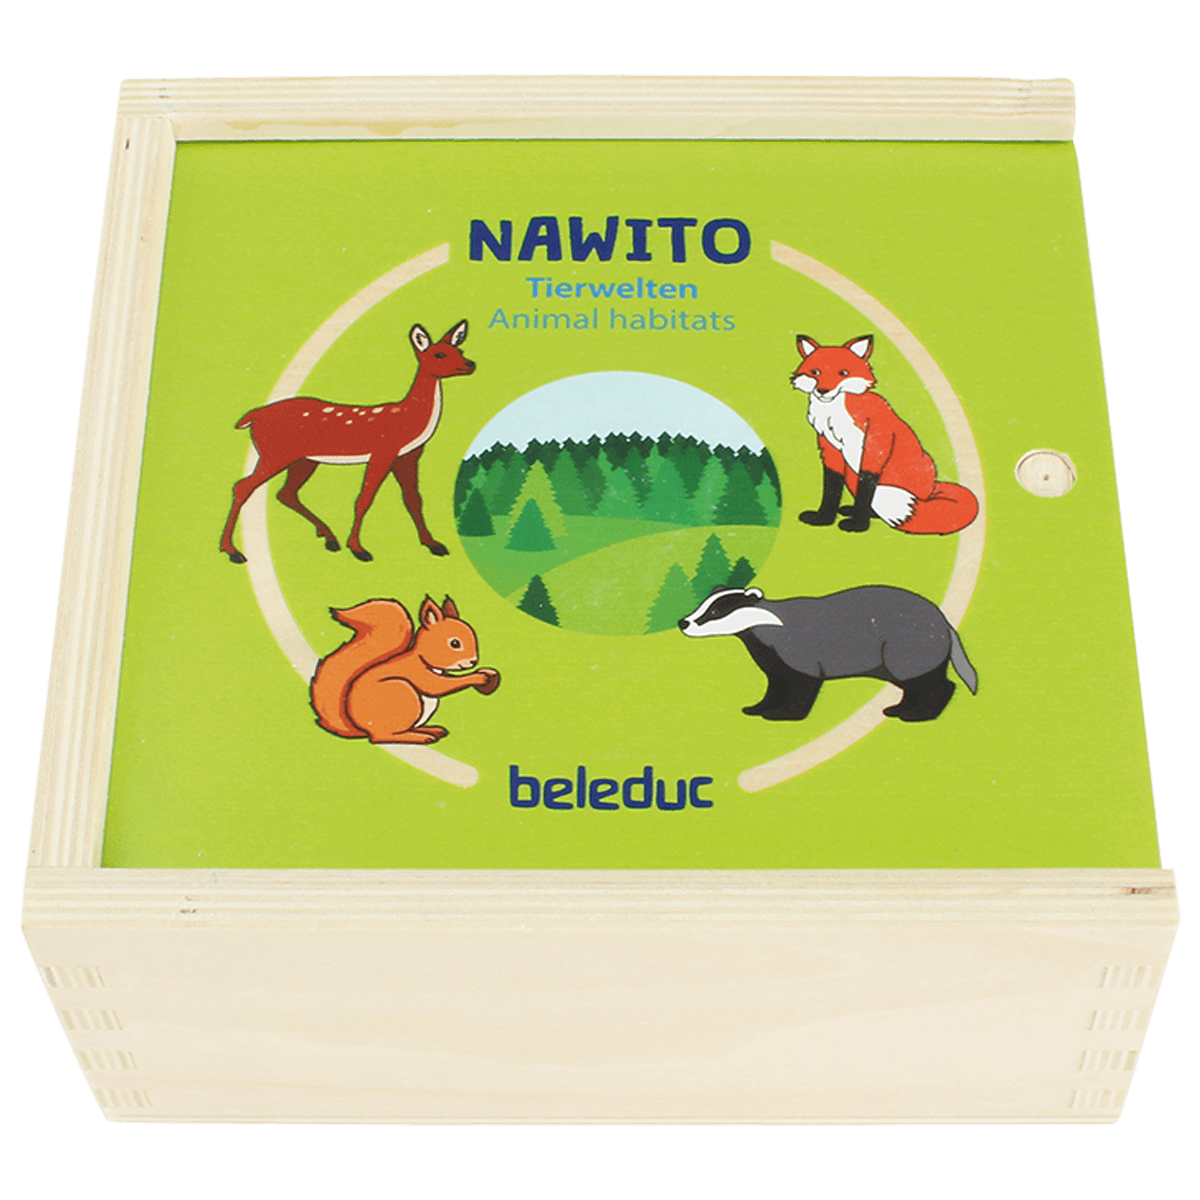 NAWITO "Animal habitats"